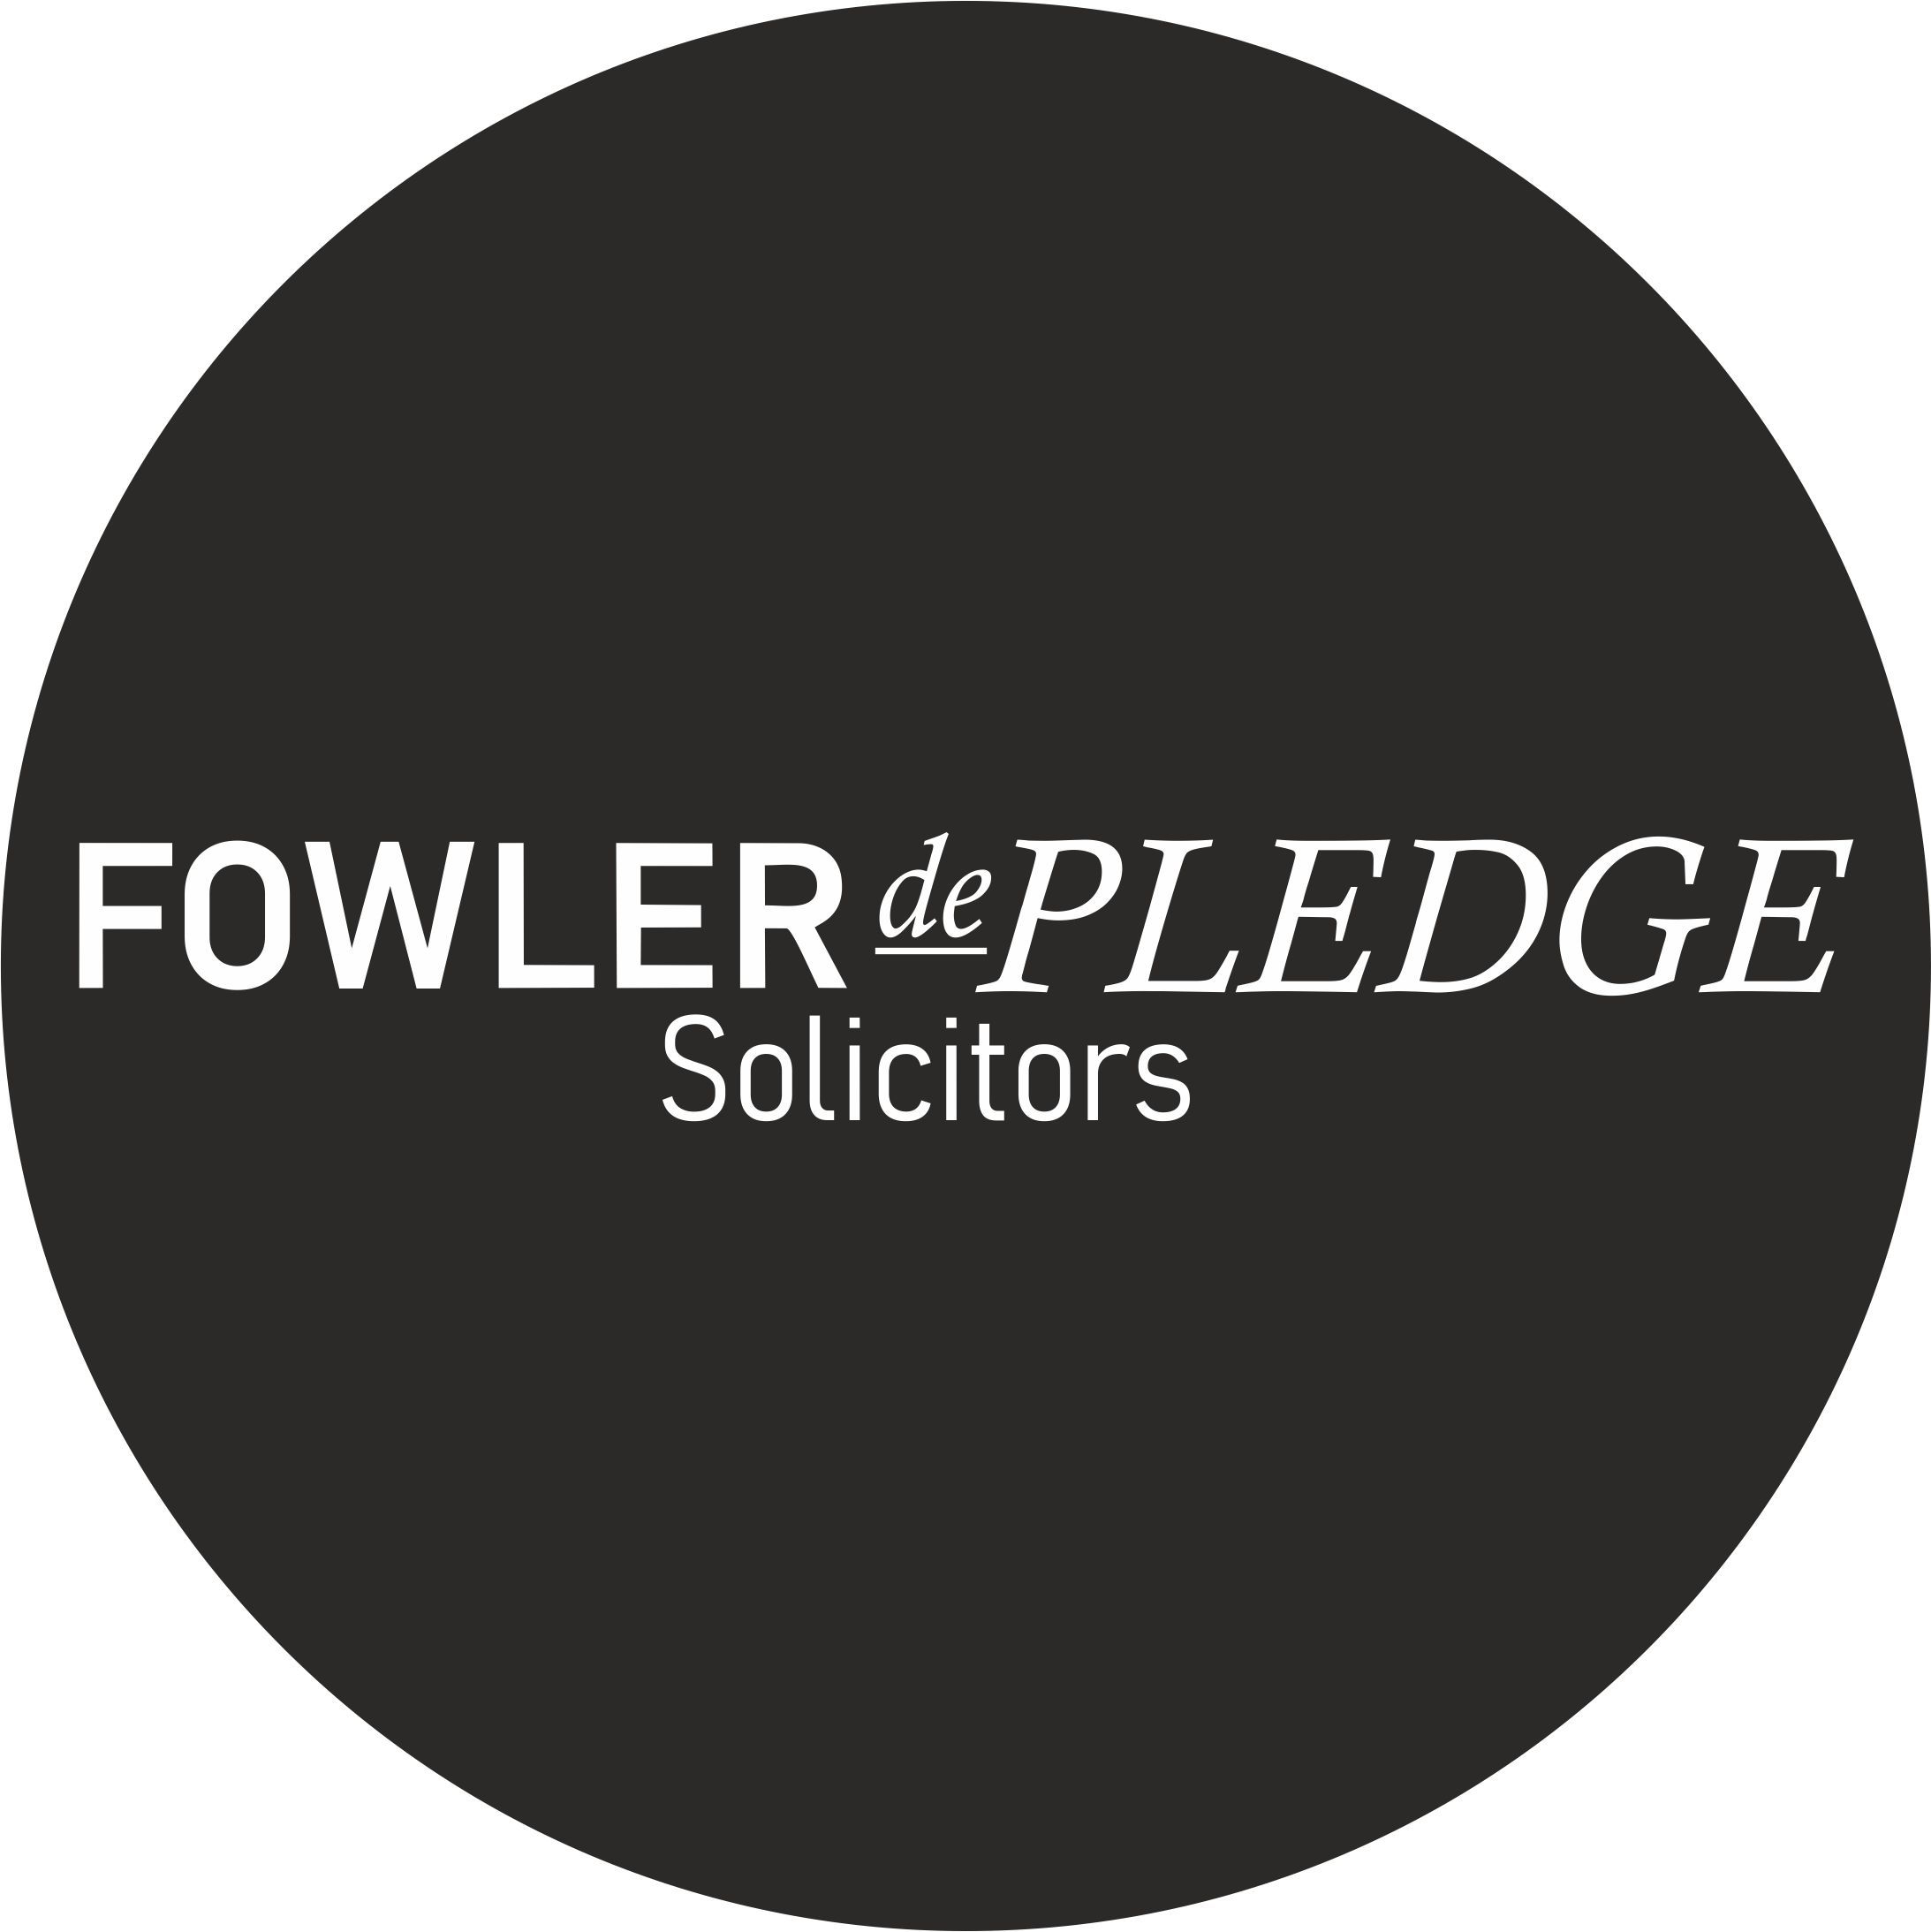 Fowler de Pledge Solicitors